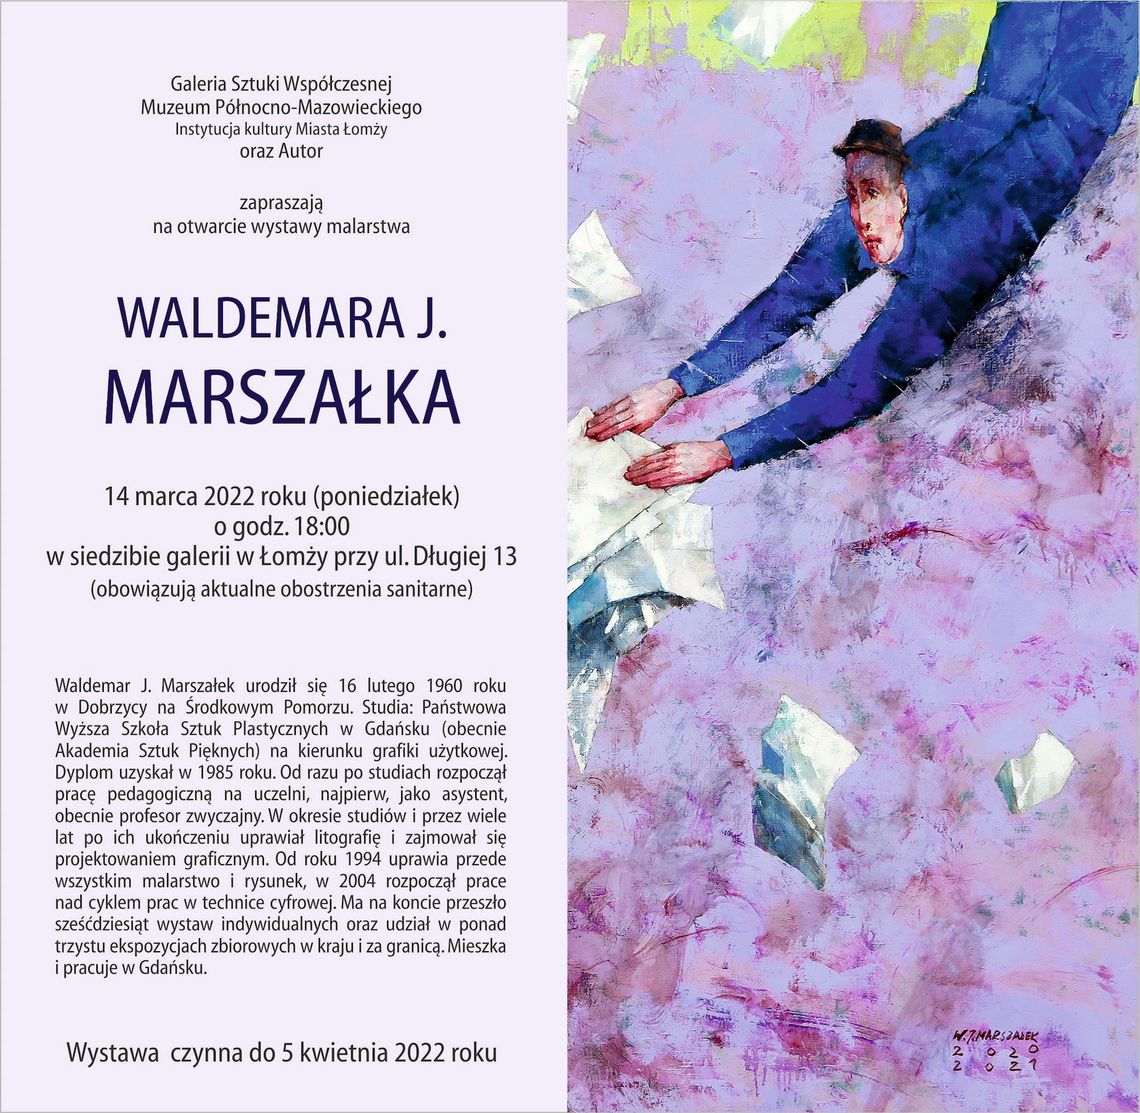 Malarskie opowieści profesora Waldemara J. Marszałka